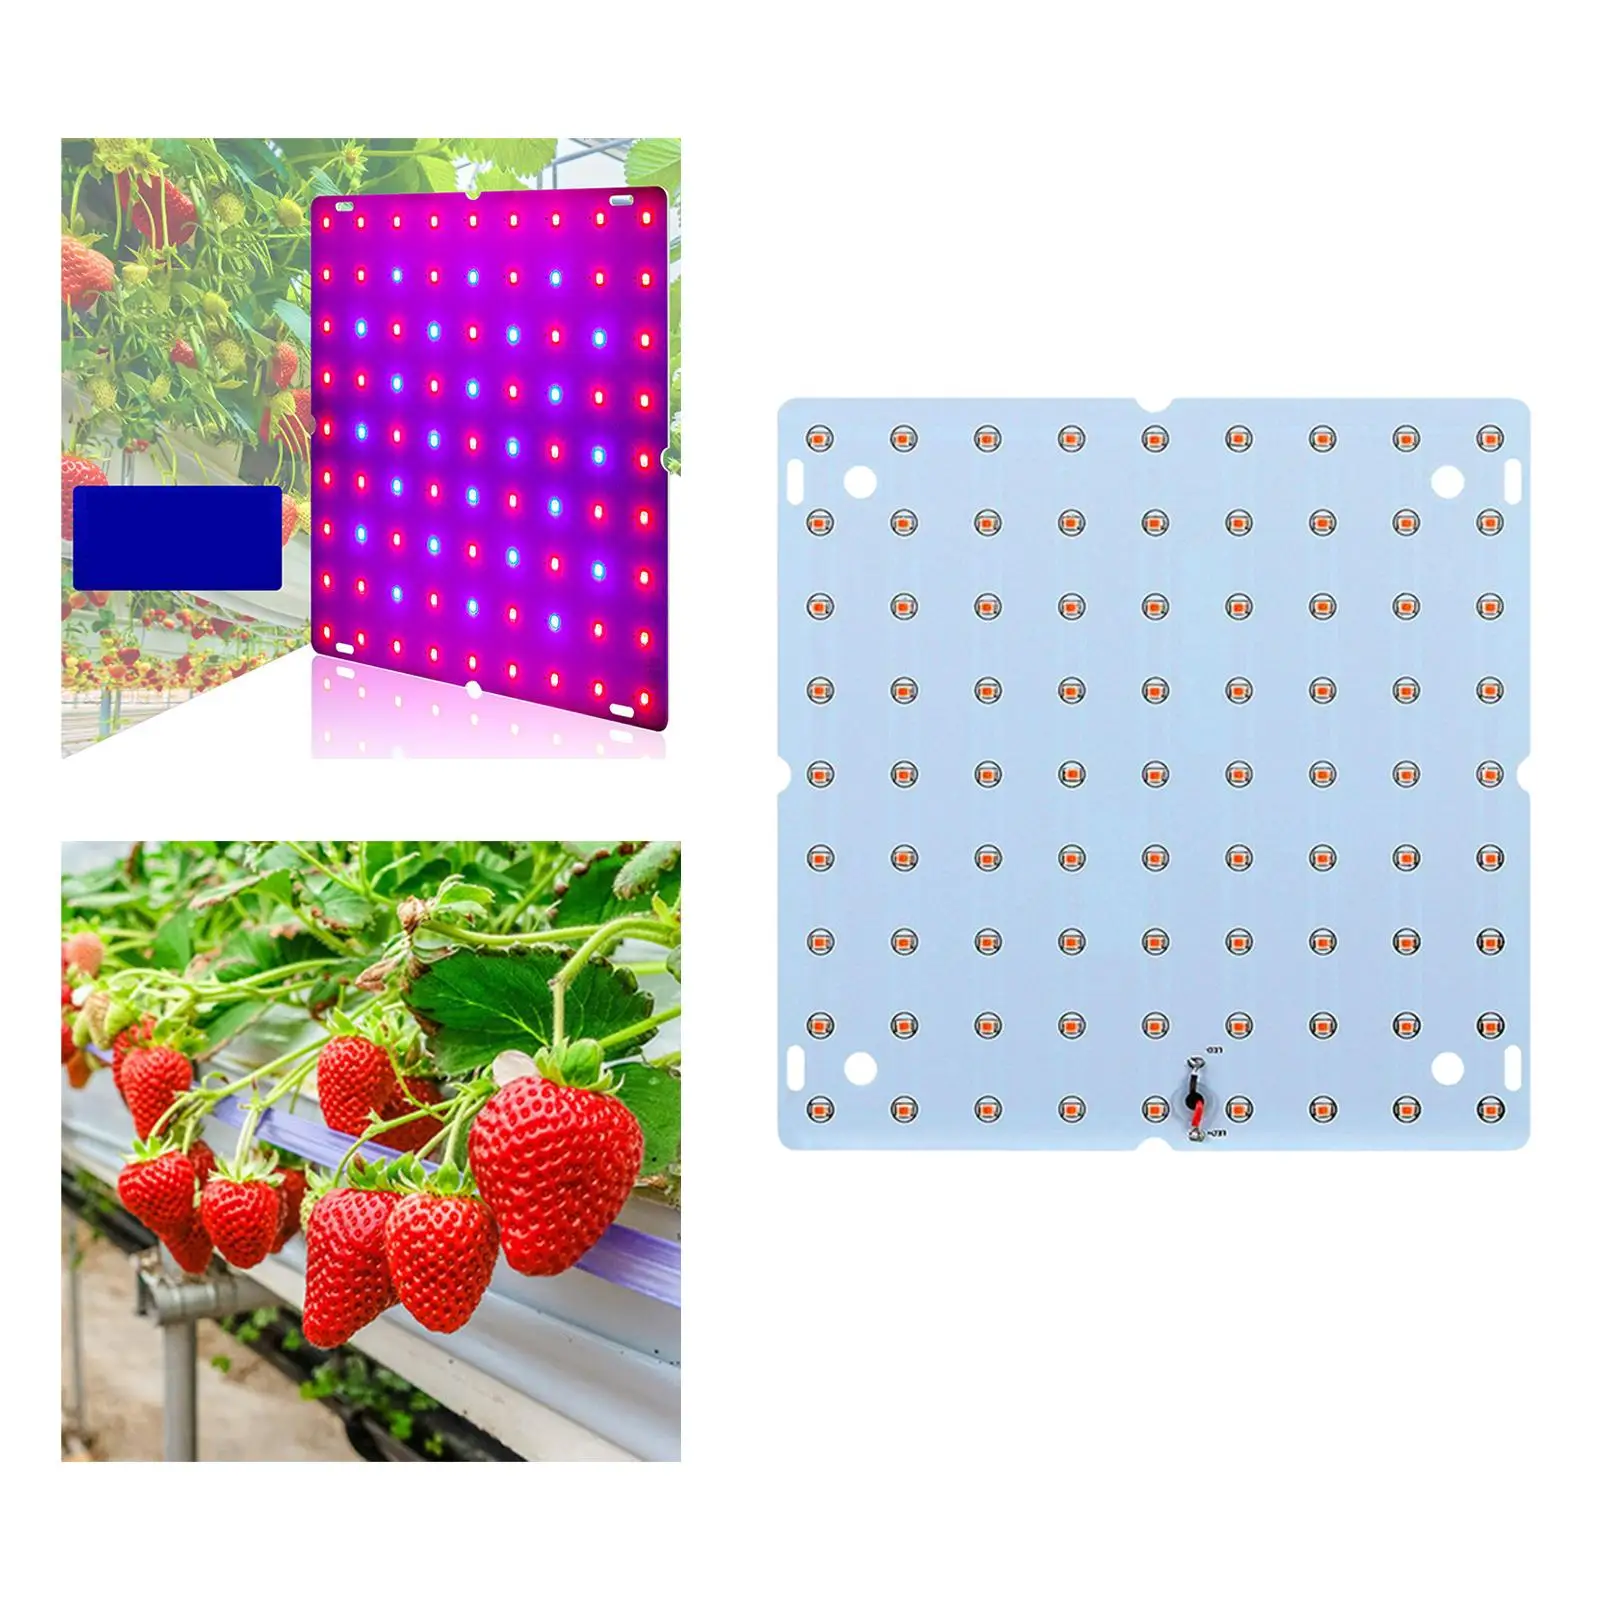 85-265V LED Grow Light Panel Full Grow Light for Vegetable Bloom Hydroponics Flower Seed Starting Greenhouse